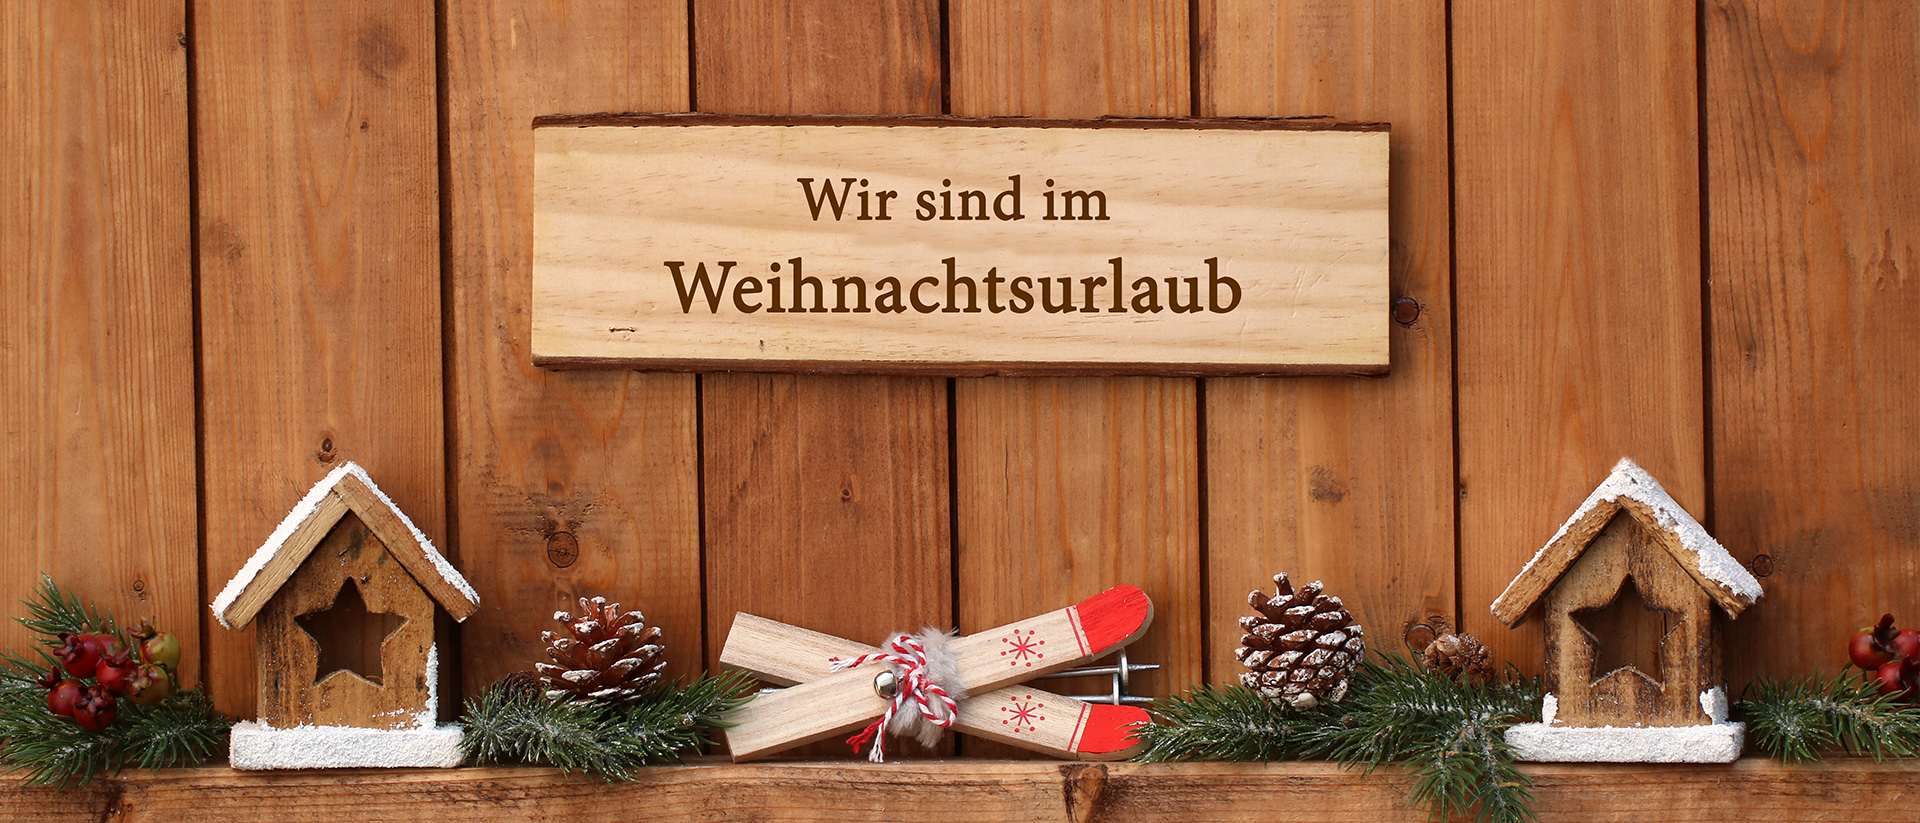 Schild mit Hinweis zum Weihnachtsurlaub an Holzwand mit Weihnachtsdeko